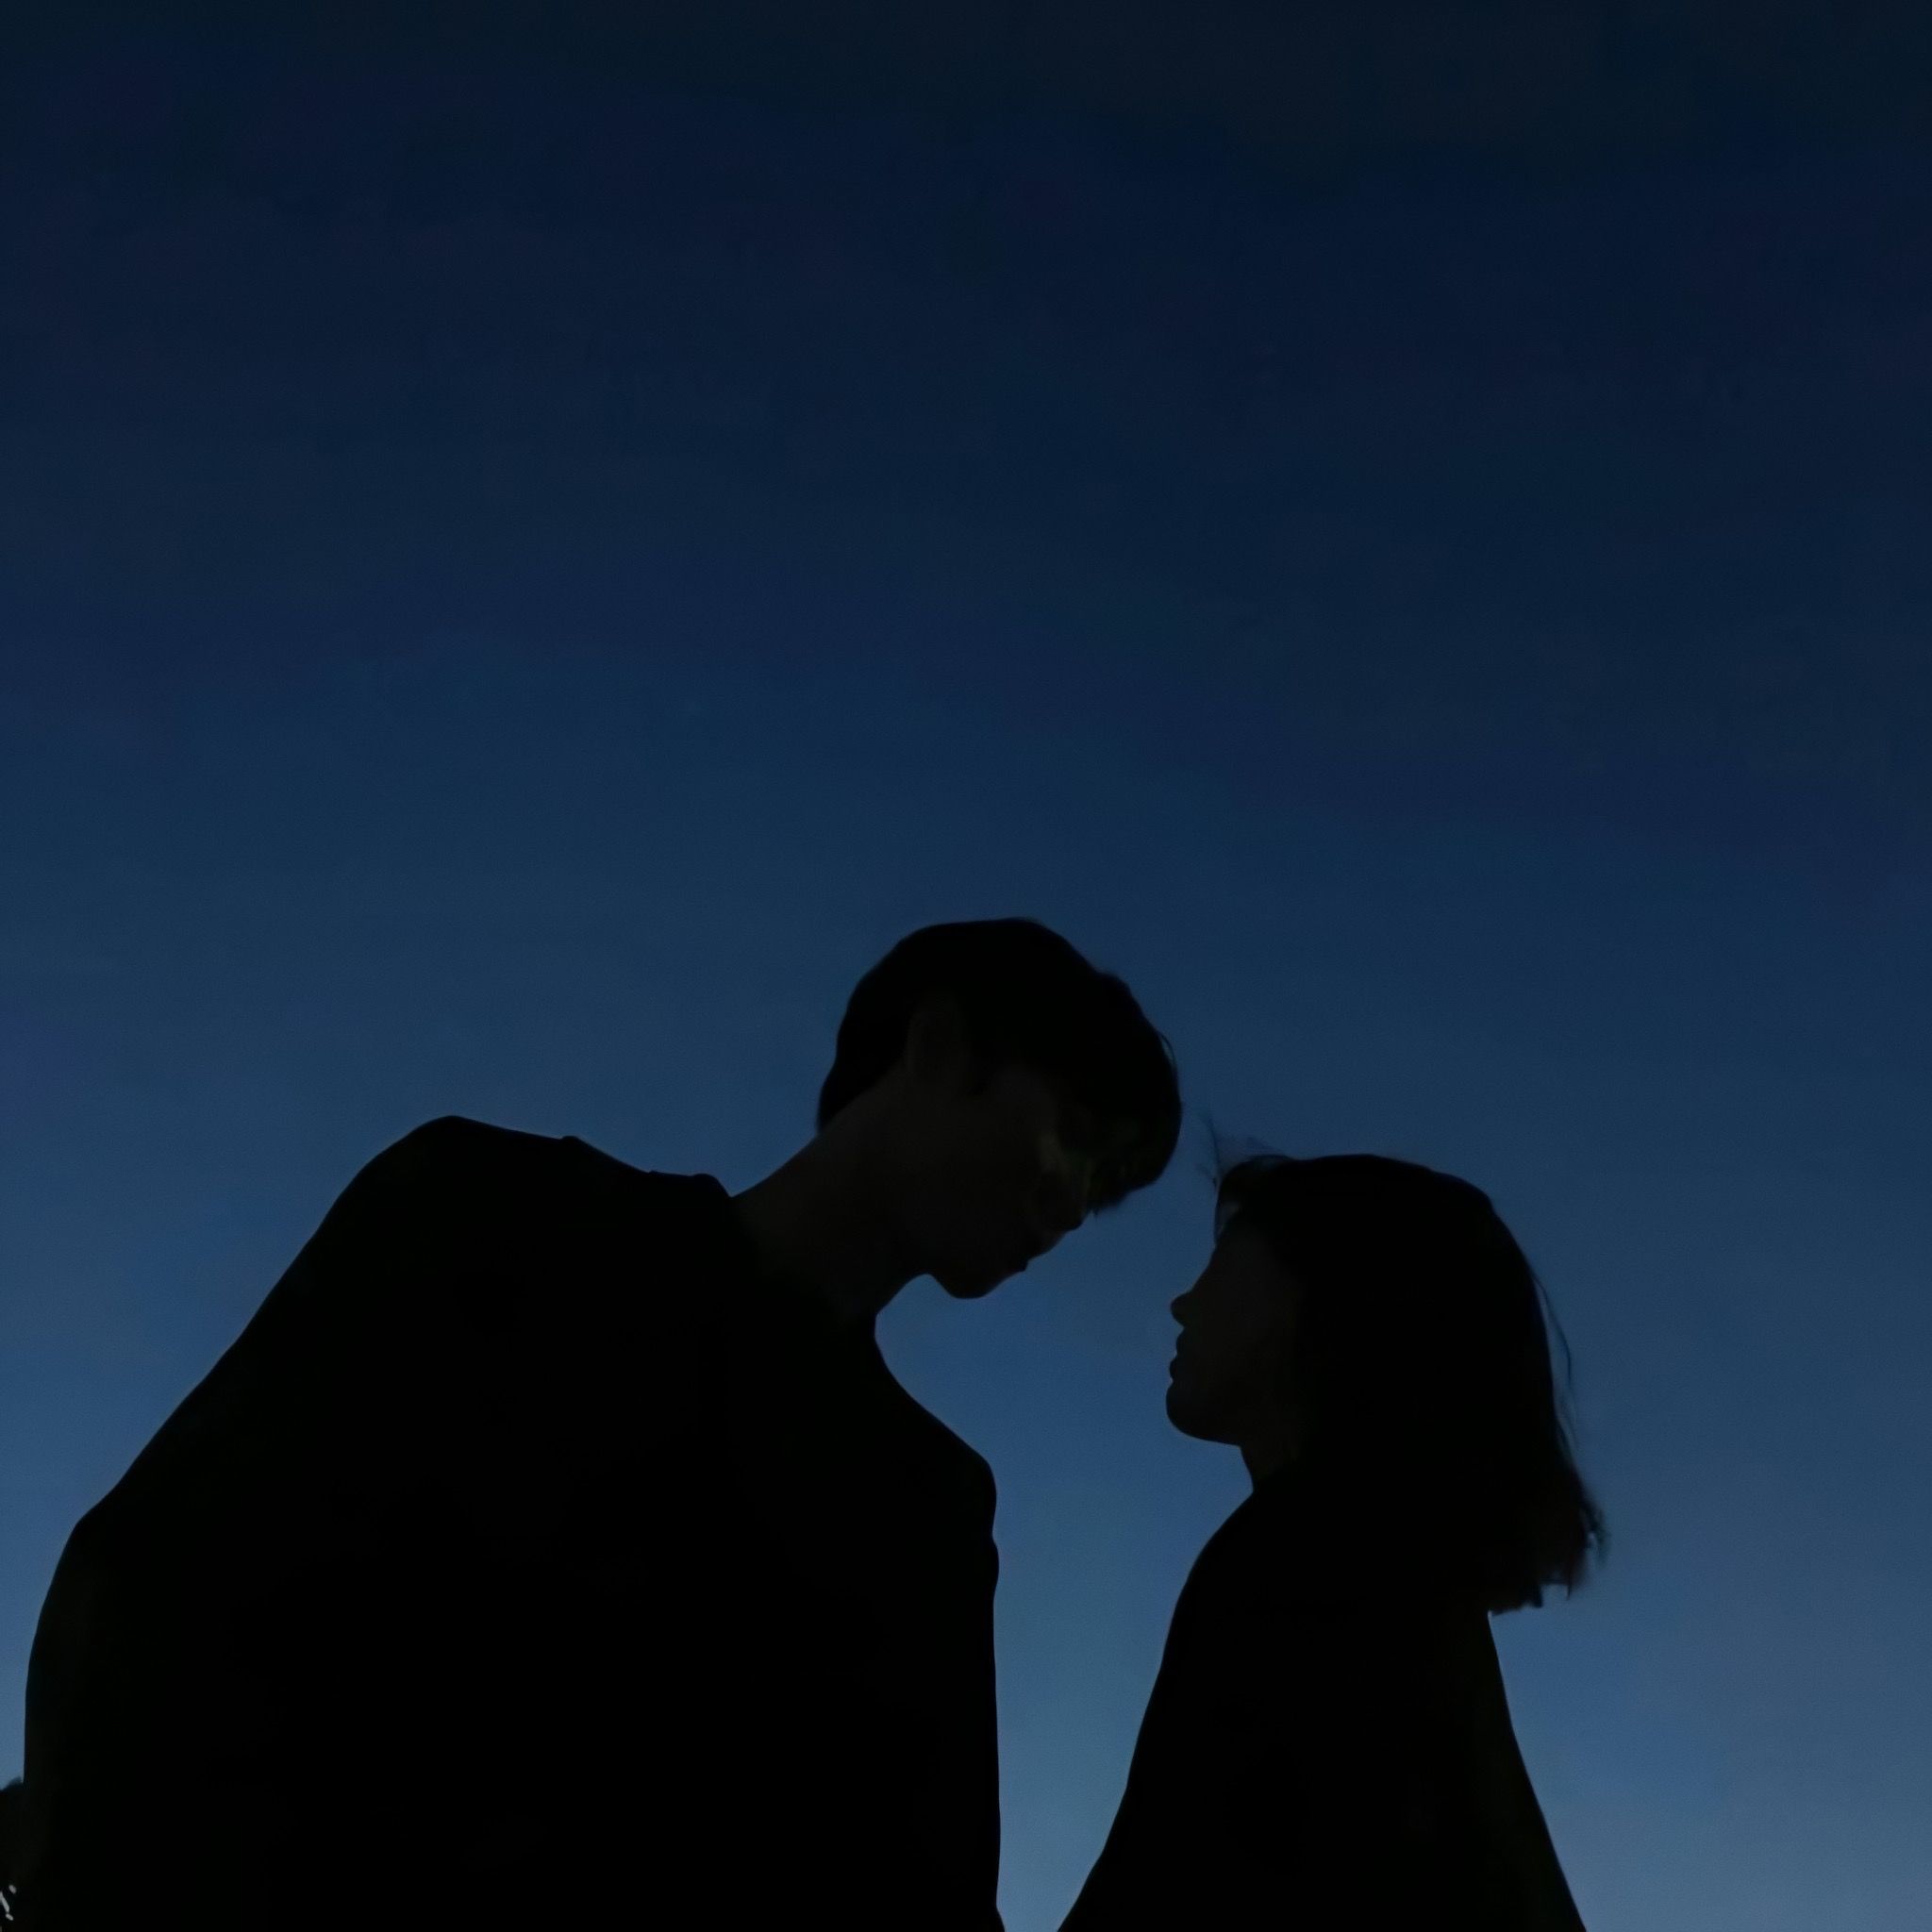 Ảnh cặp đôi buồn trắng đen: Những bức ảnh cặp đôi buồn trắng đen luôn mang đến cảm giác đong đầy tình cảm và lãng mạn. Hãy cùng ngắm nhìn những khoảnh khắc đầy ý nghĩa của cặp đôi này, để cảm nhận được tình yêu và sự kết nối của họ.